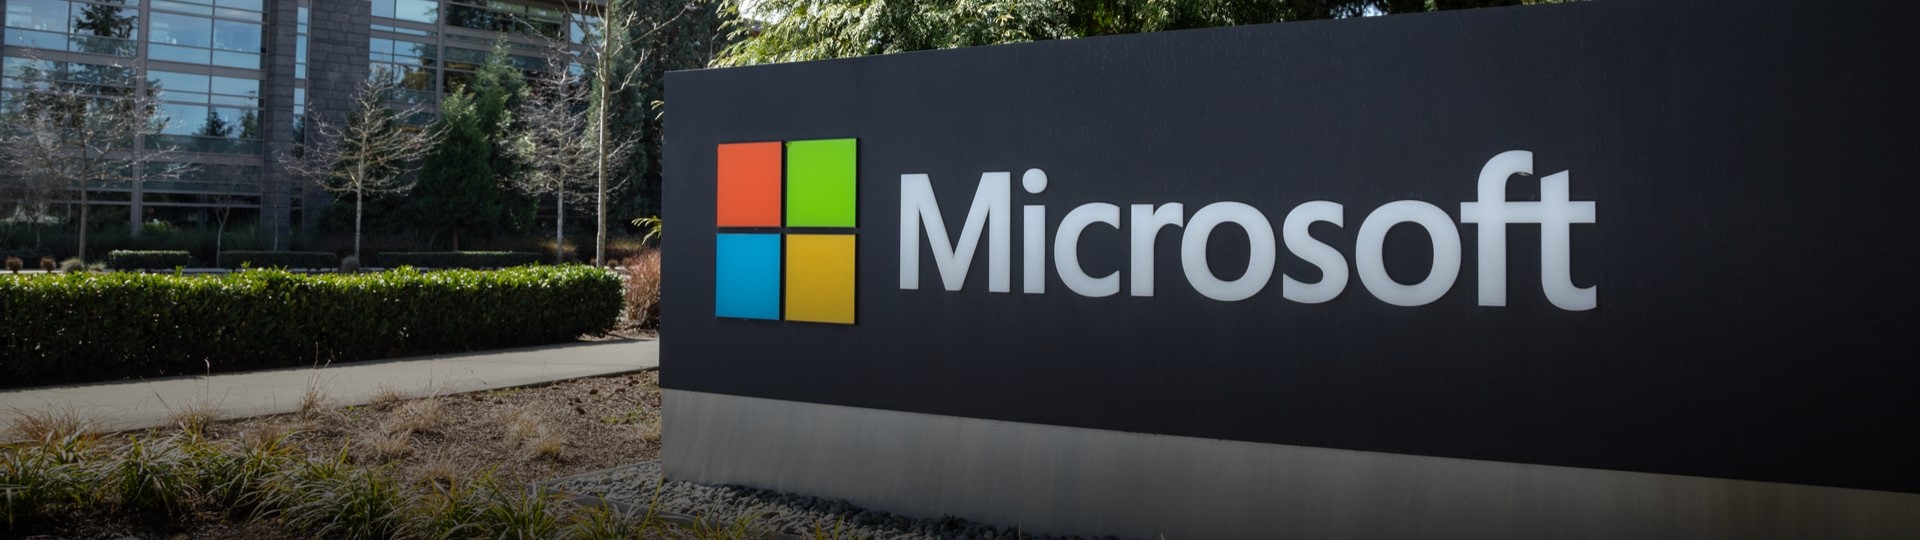 Microsoft zpřístupní novou verzi svého operačního systému Windows začátkem října